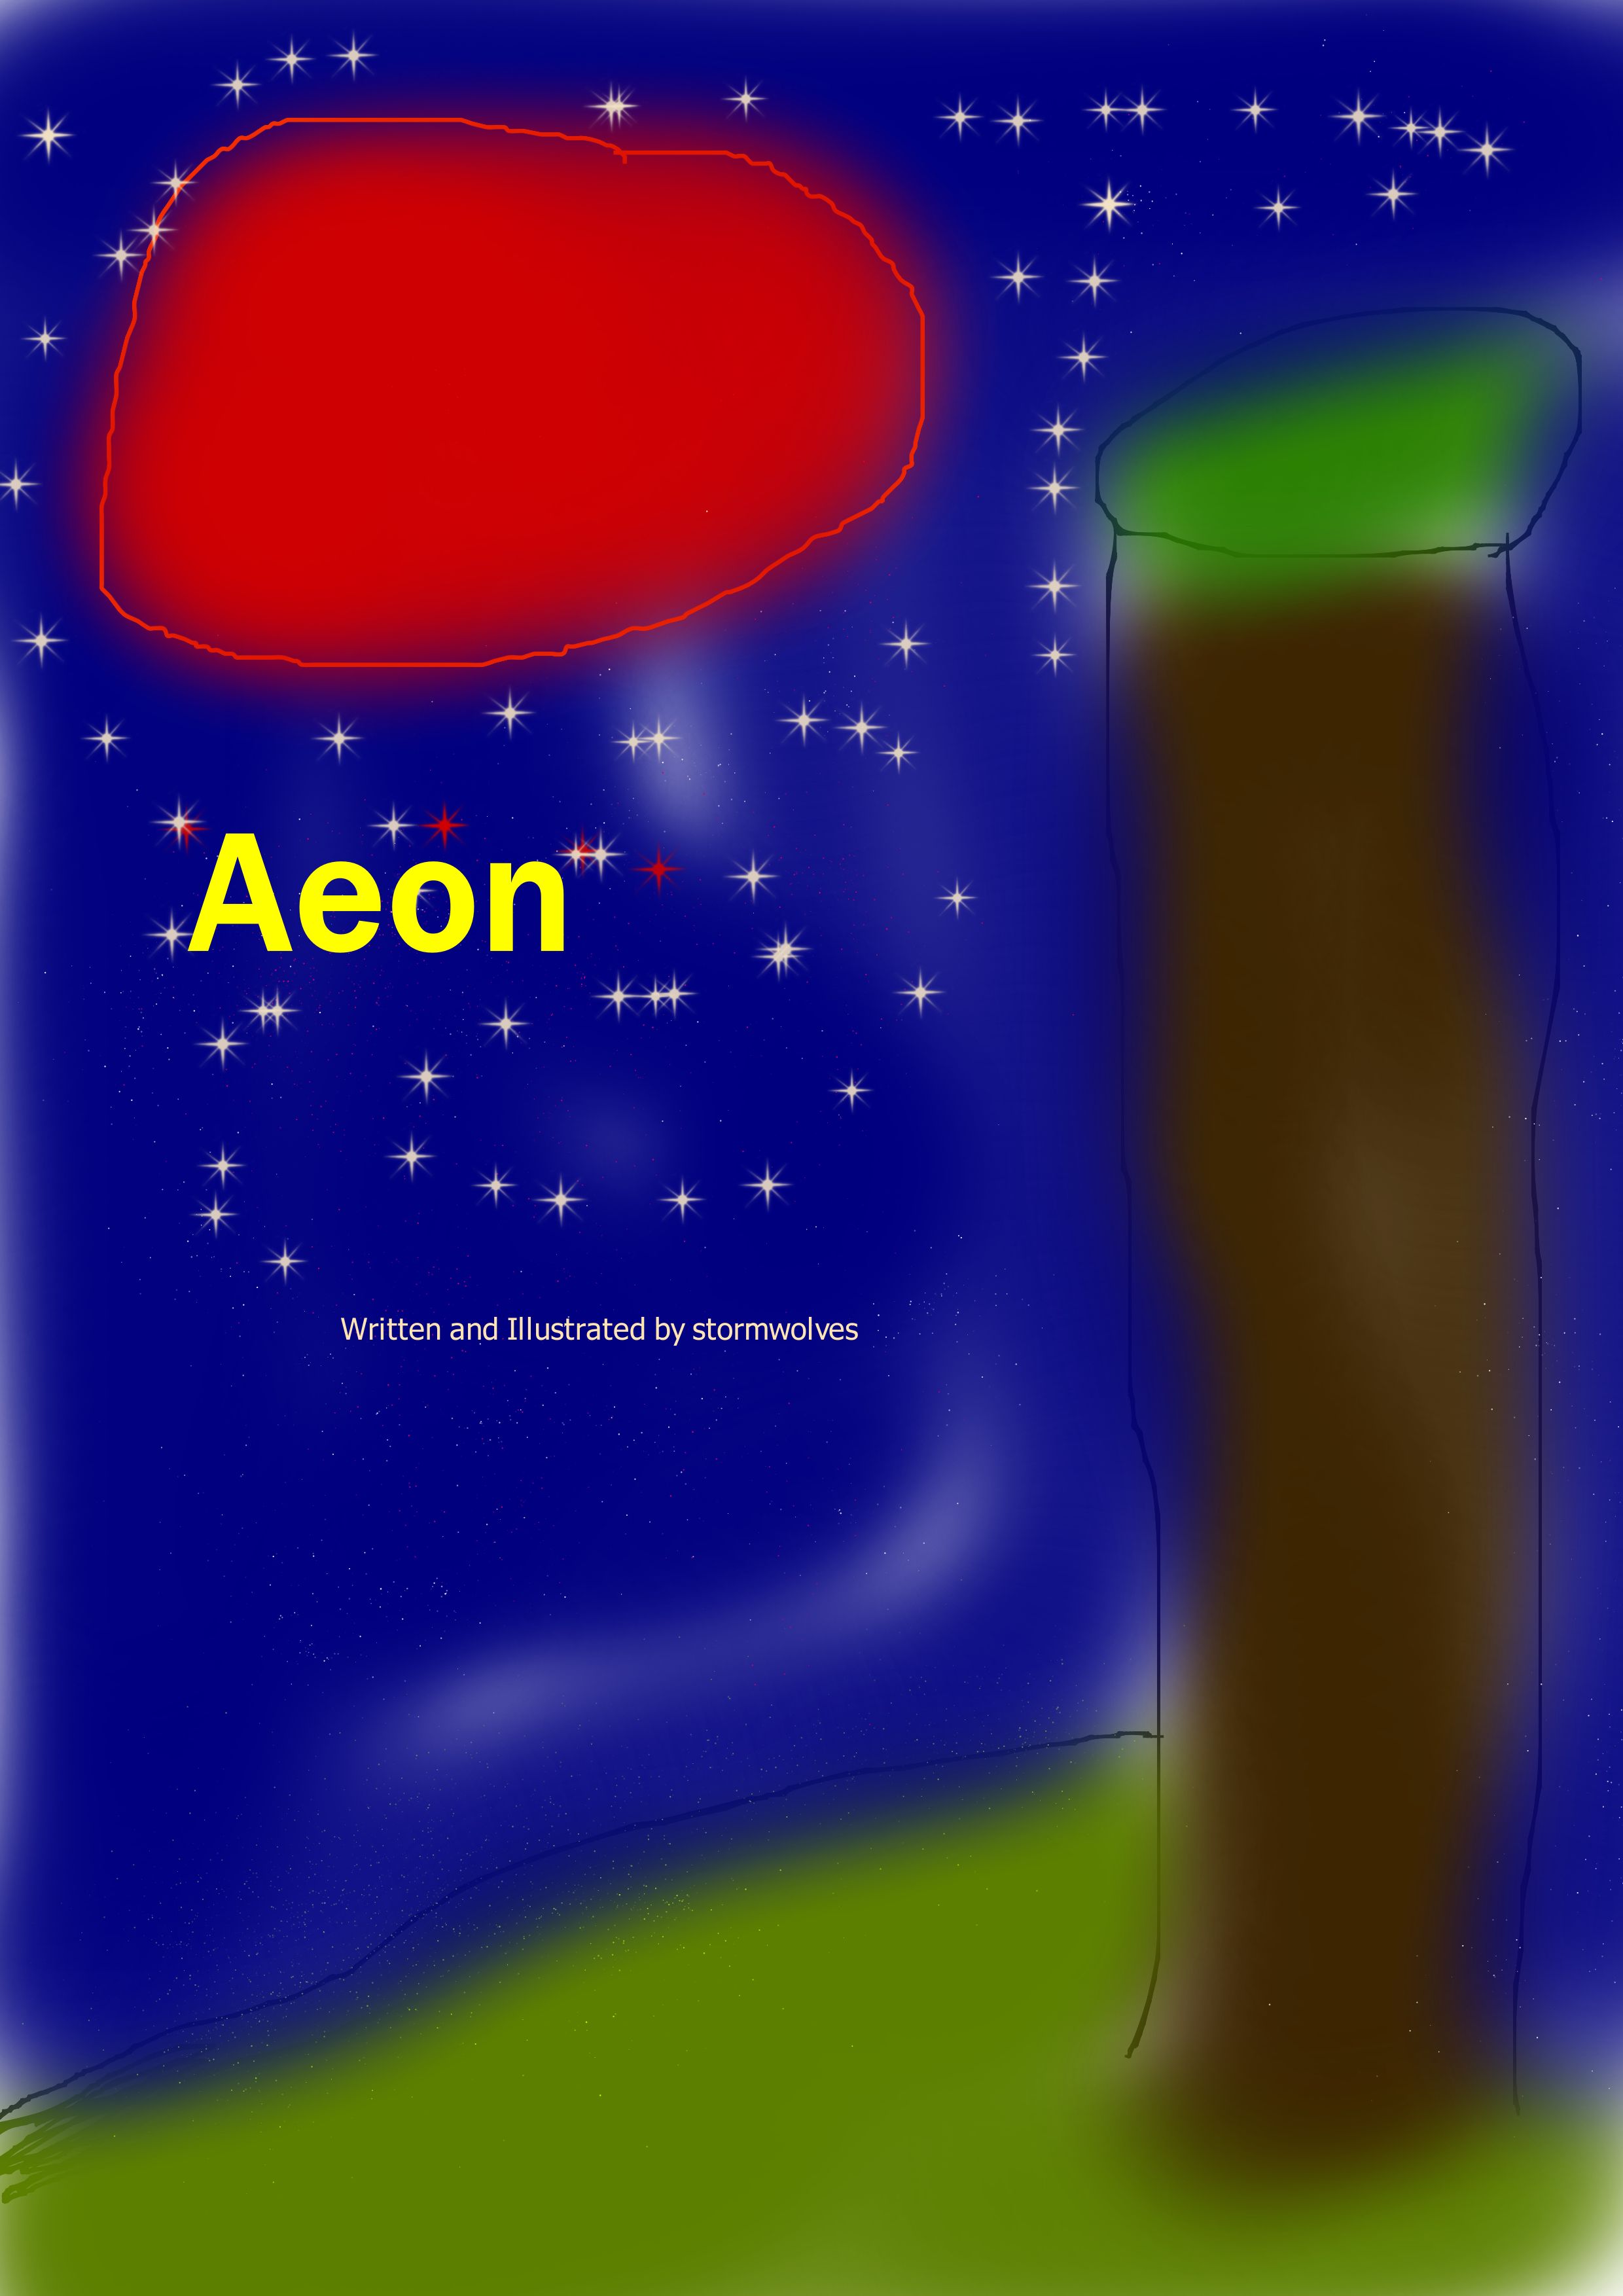 Aeon - Aeon